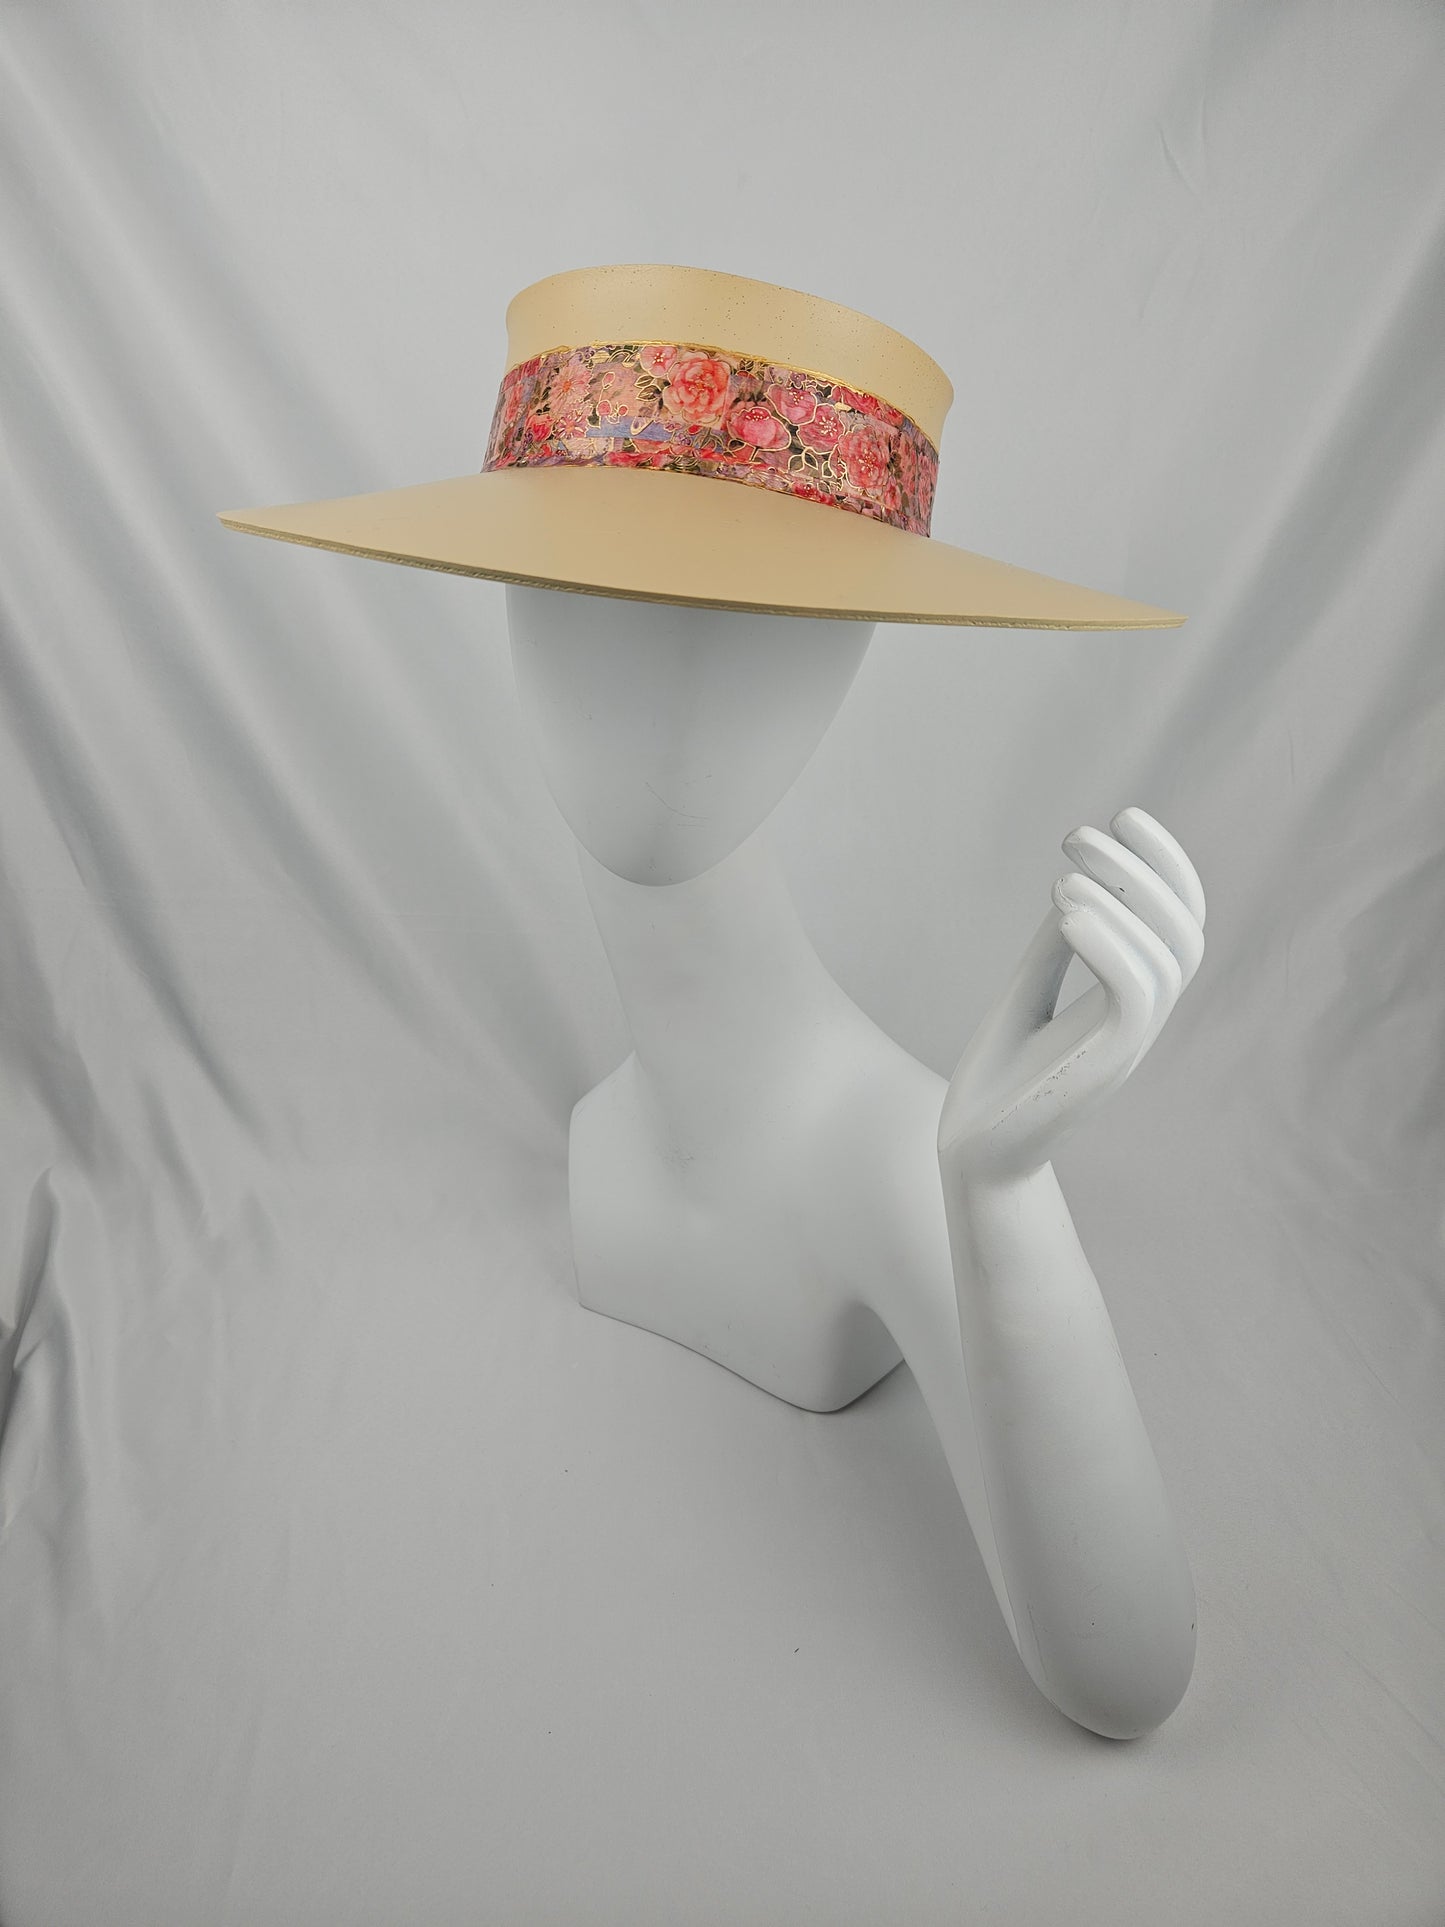 Beautiful Beige Audrey Cute Sun Visor Hat with Pink and Red Floral Band: Walks, Brunch, Tea, Garden, Golf, Summer, Church, No Headache